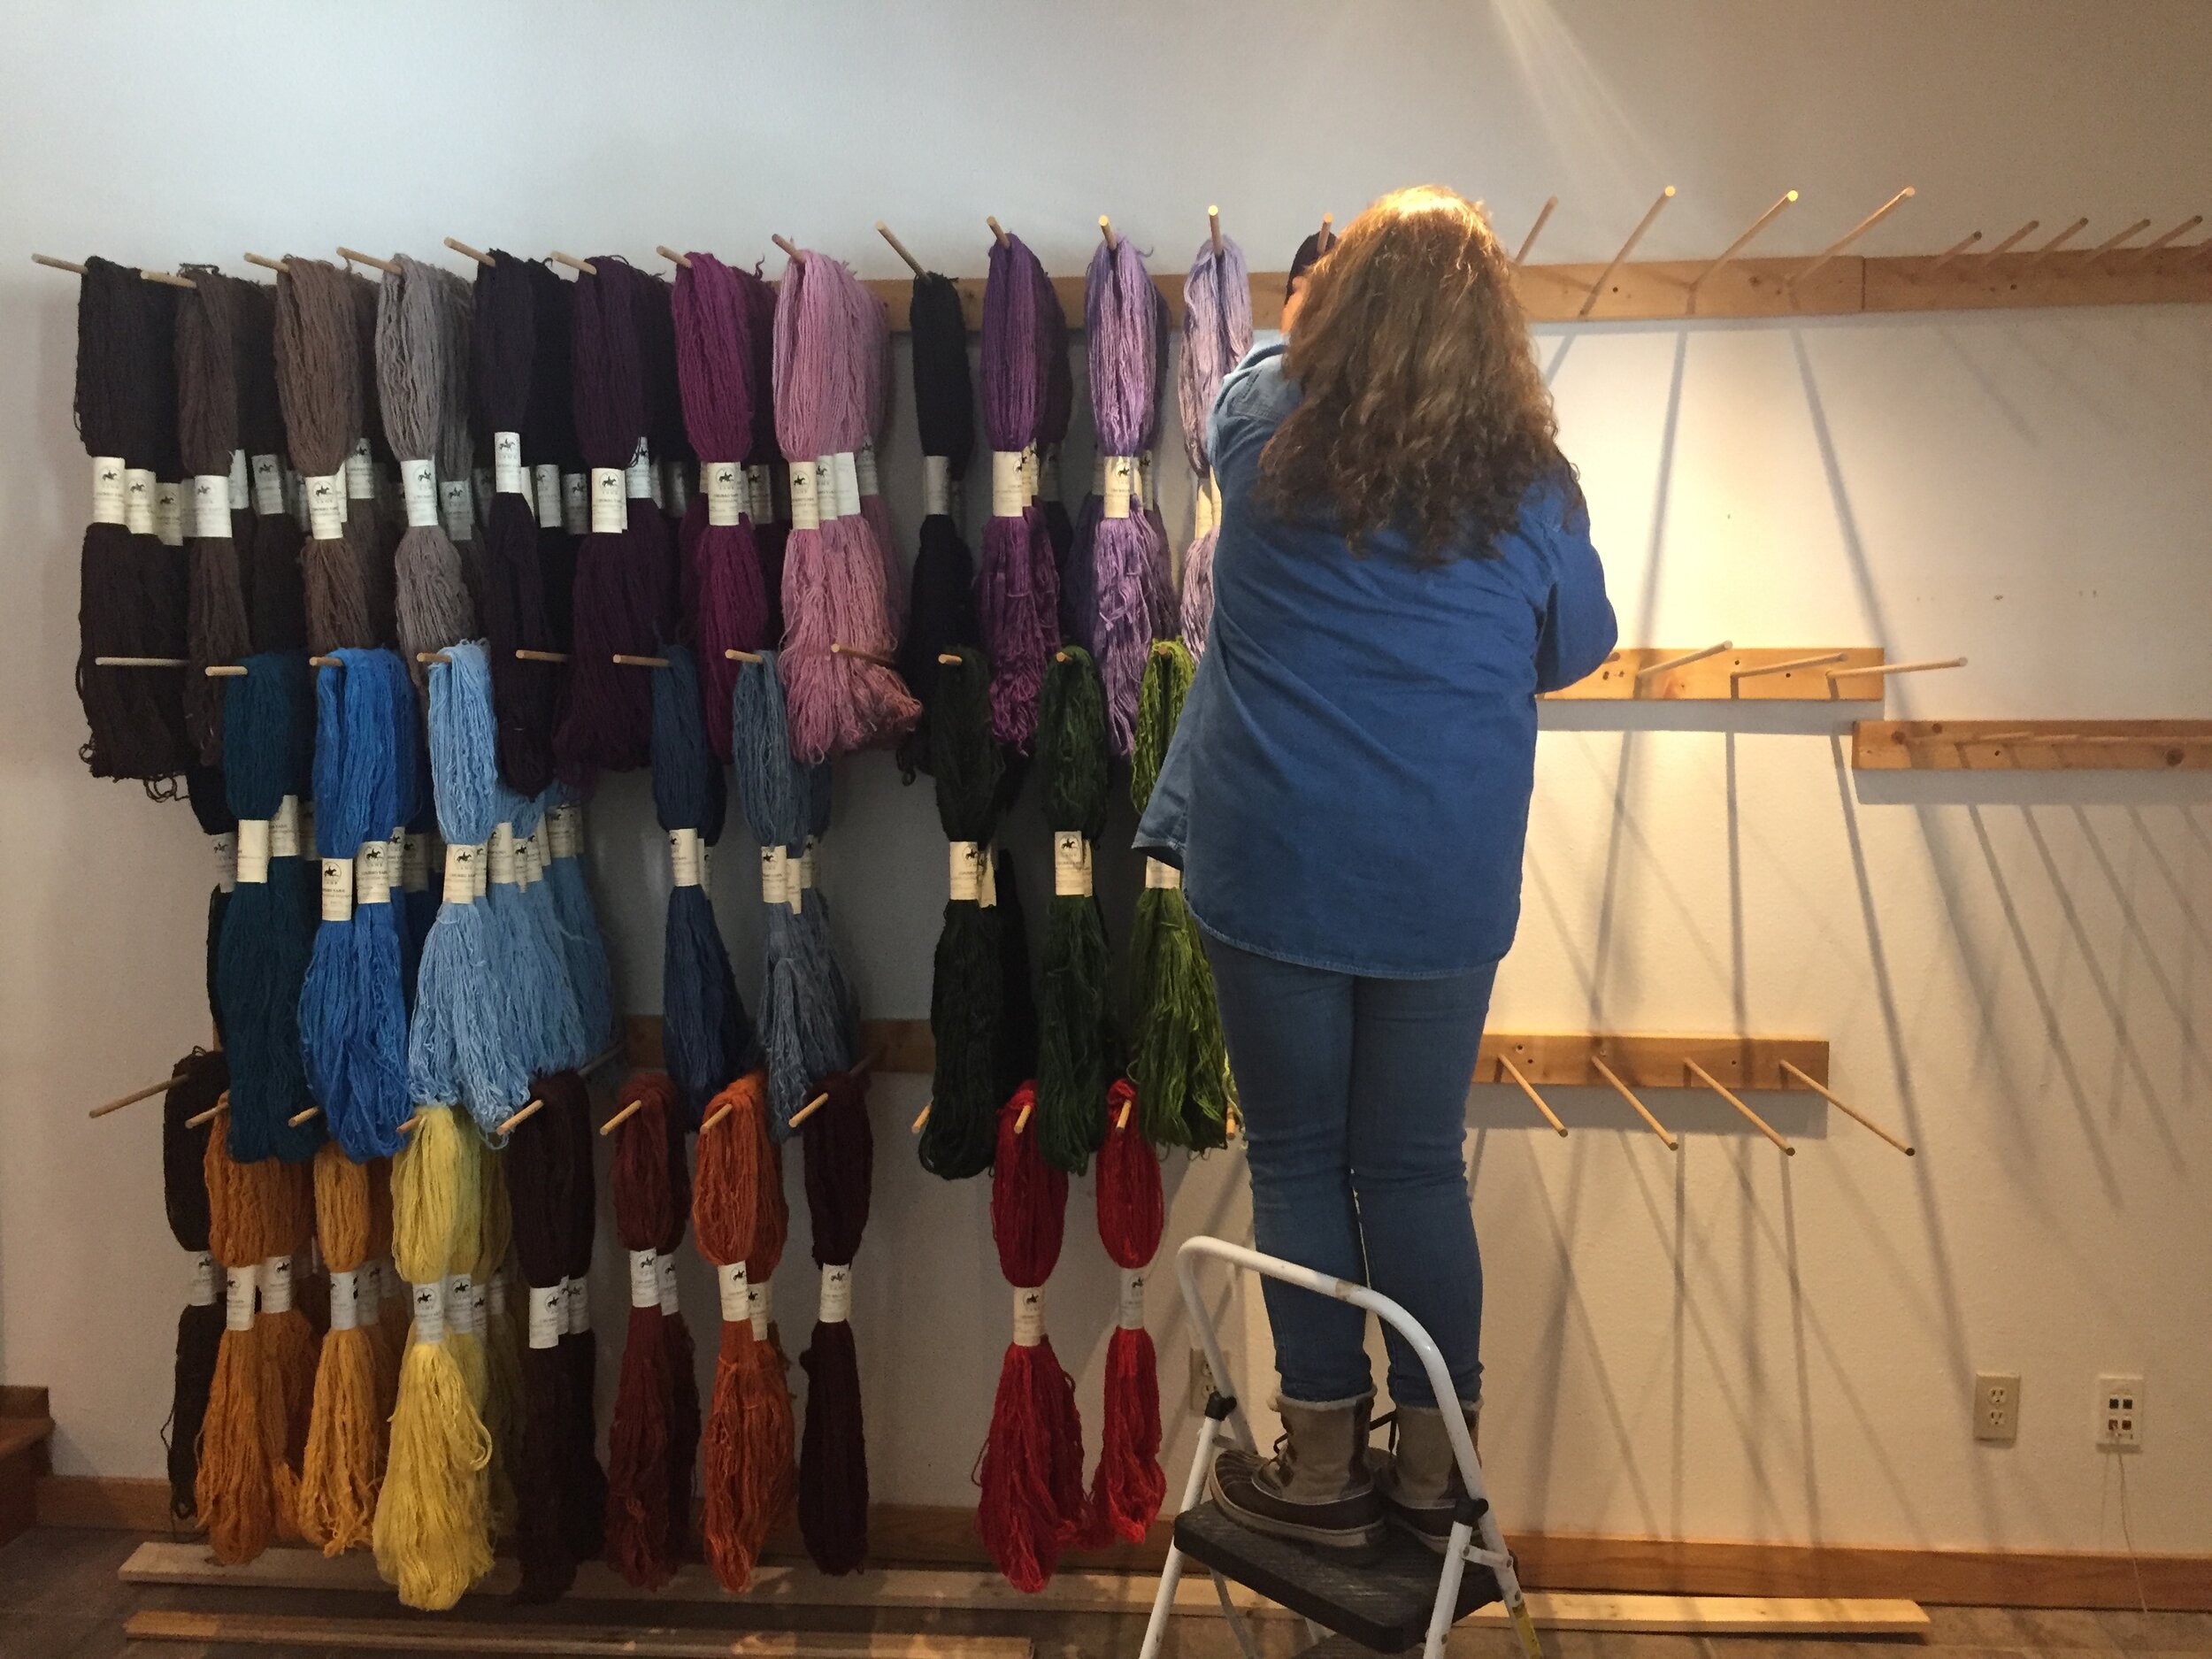 Churro Rug Yarn | Limited Collection | Greens — Tierra Wools